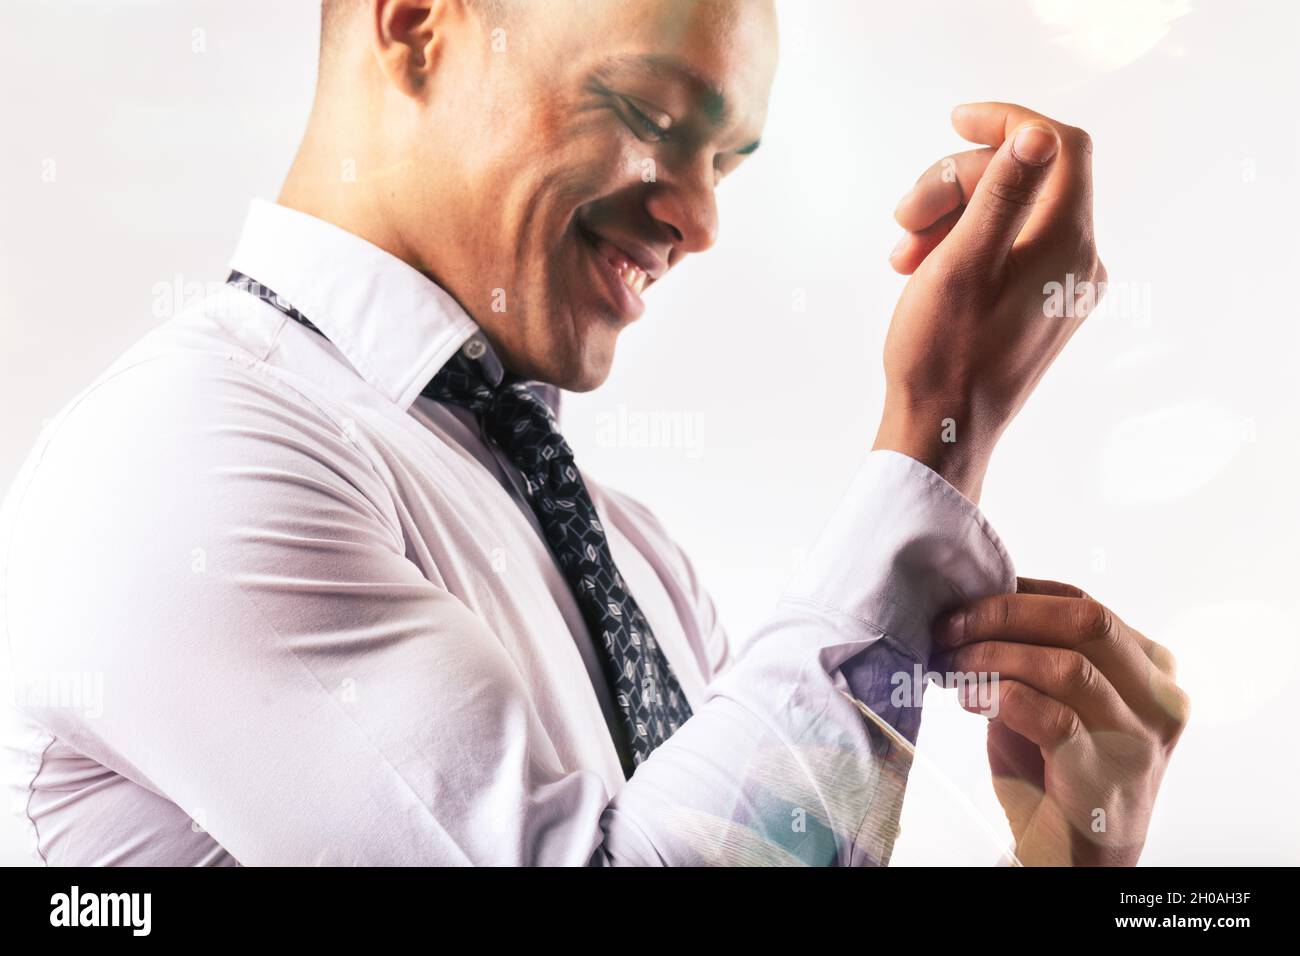 Kurze Nahaufnahme eines glücklichen jungen schwarzen Mannes, der sich in einem High-Key-Portrait mit dem Knopf auf dem Ärmel seines Hemdes verkleidet Stockfoto